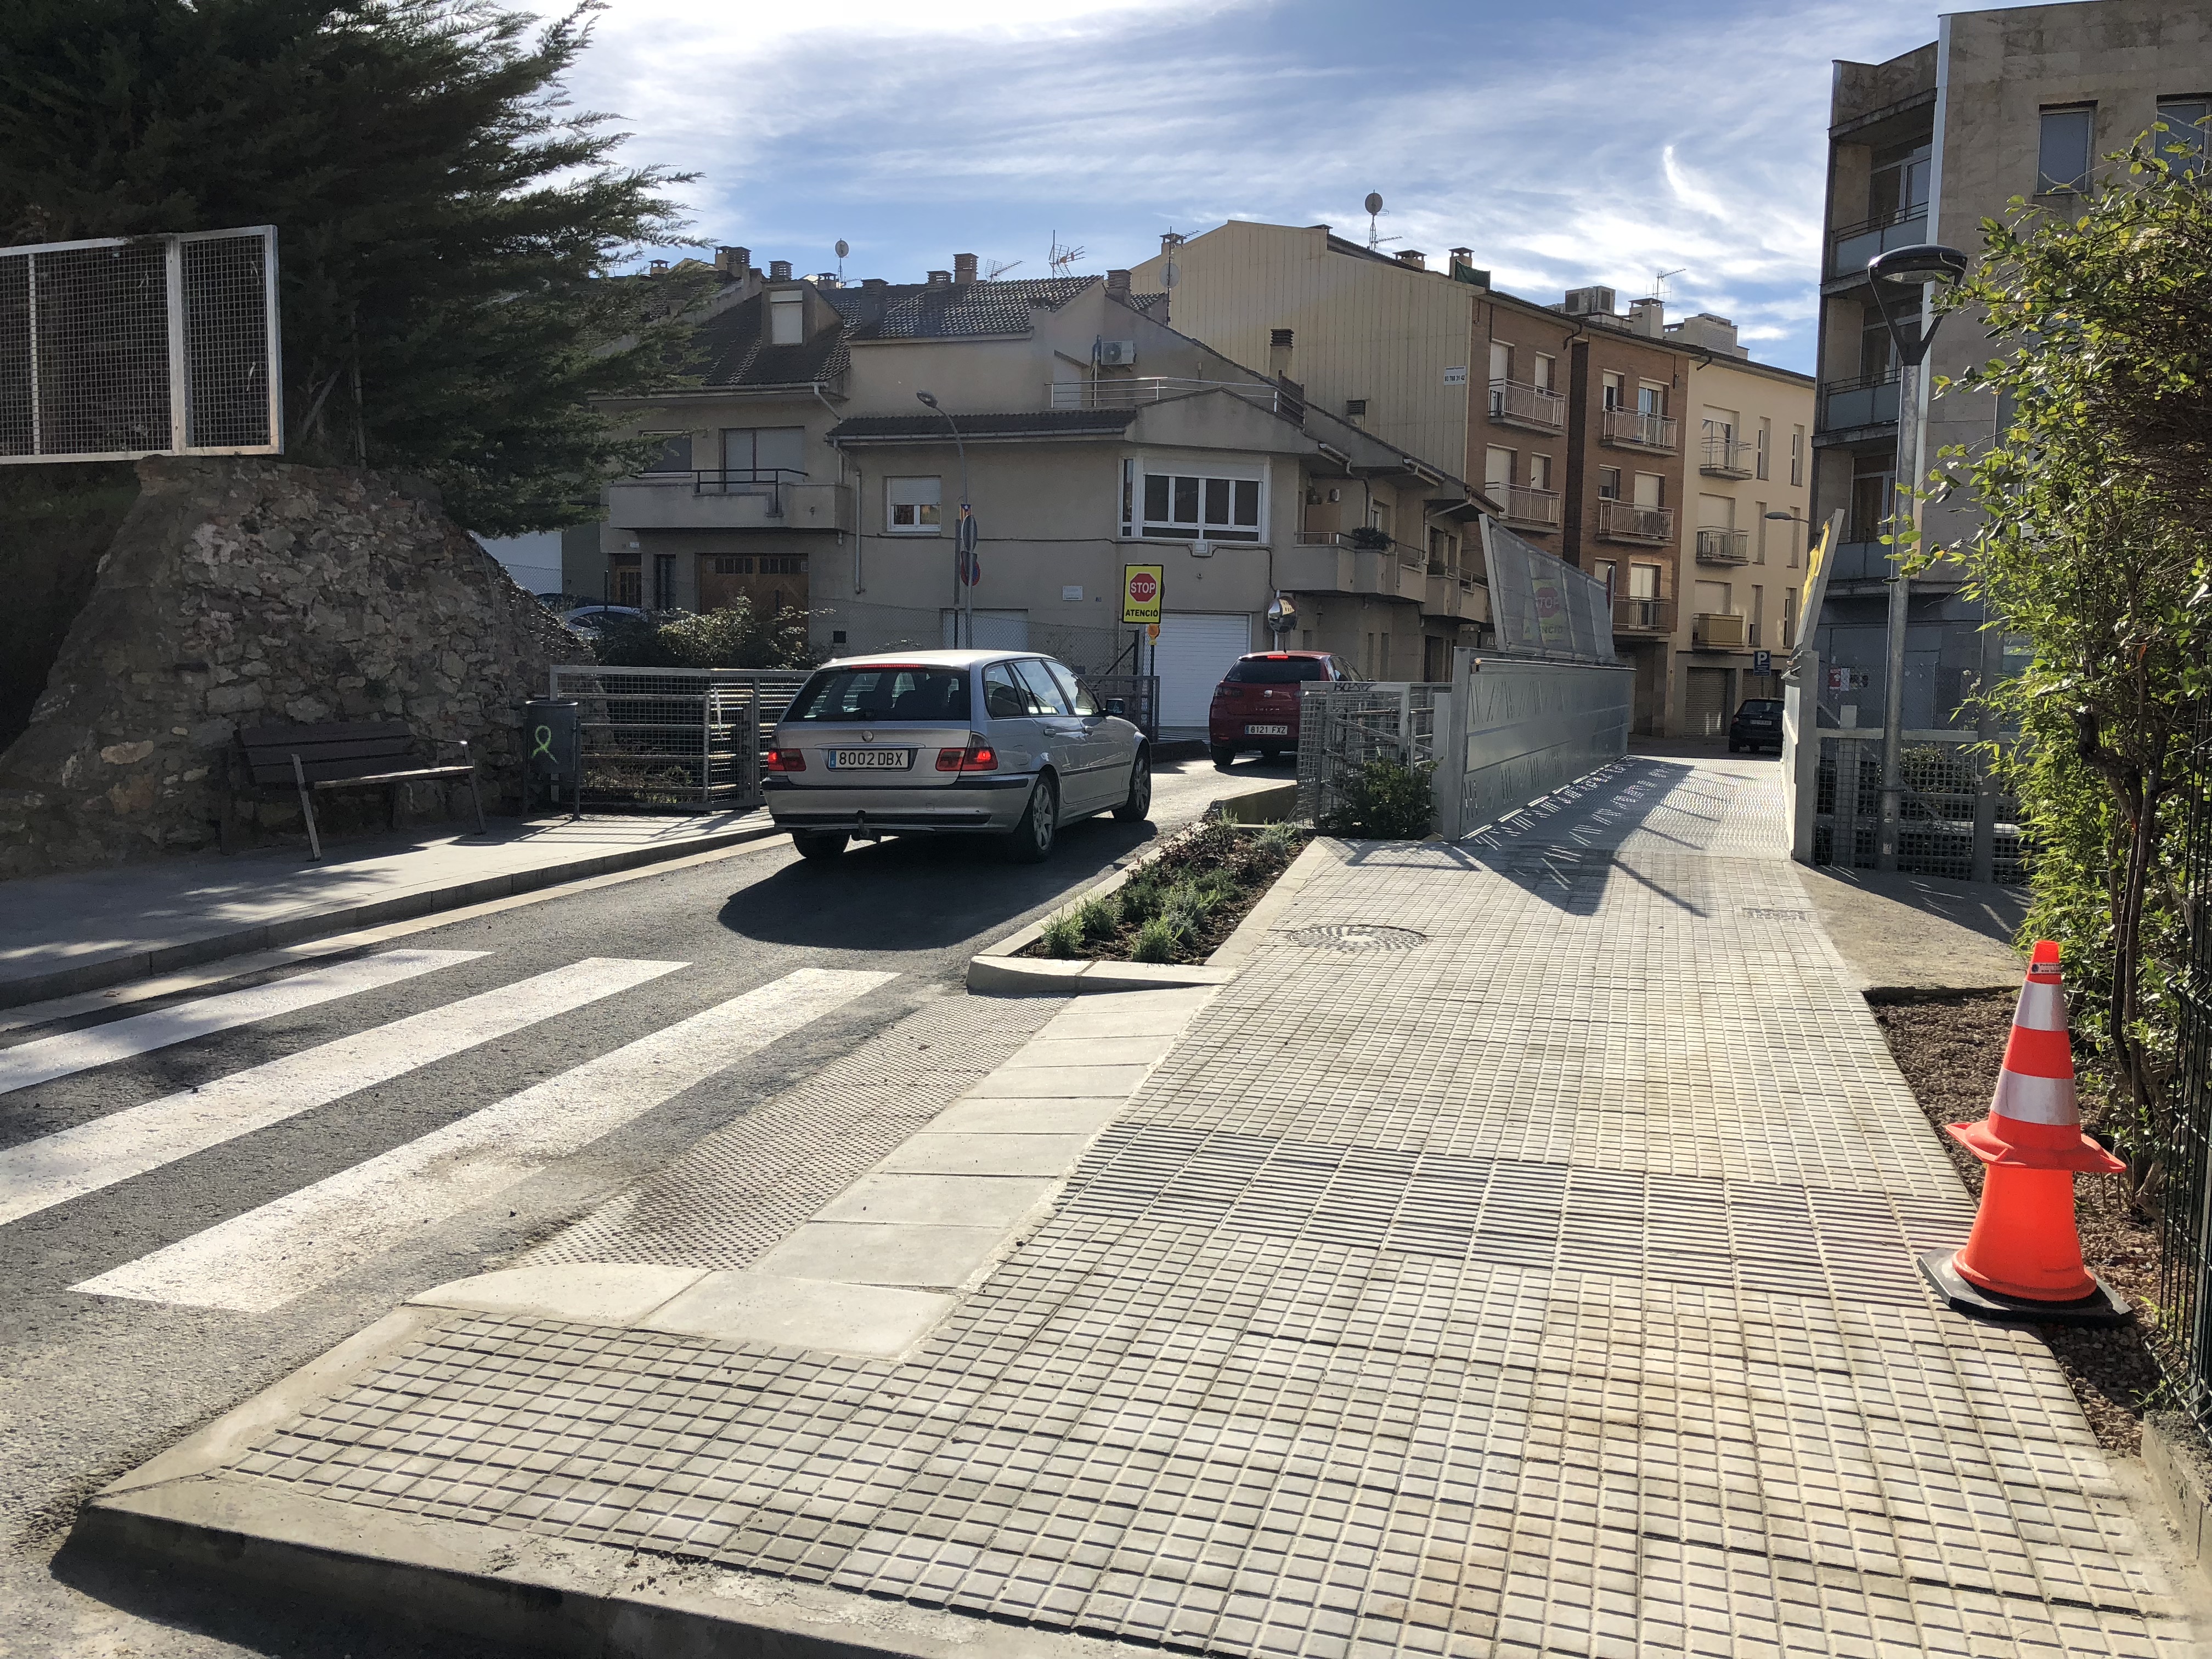 La instal·lació de la nova passera ara obliga a fer 'stop' als cotxes que baixen pel carrer Majpr